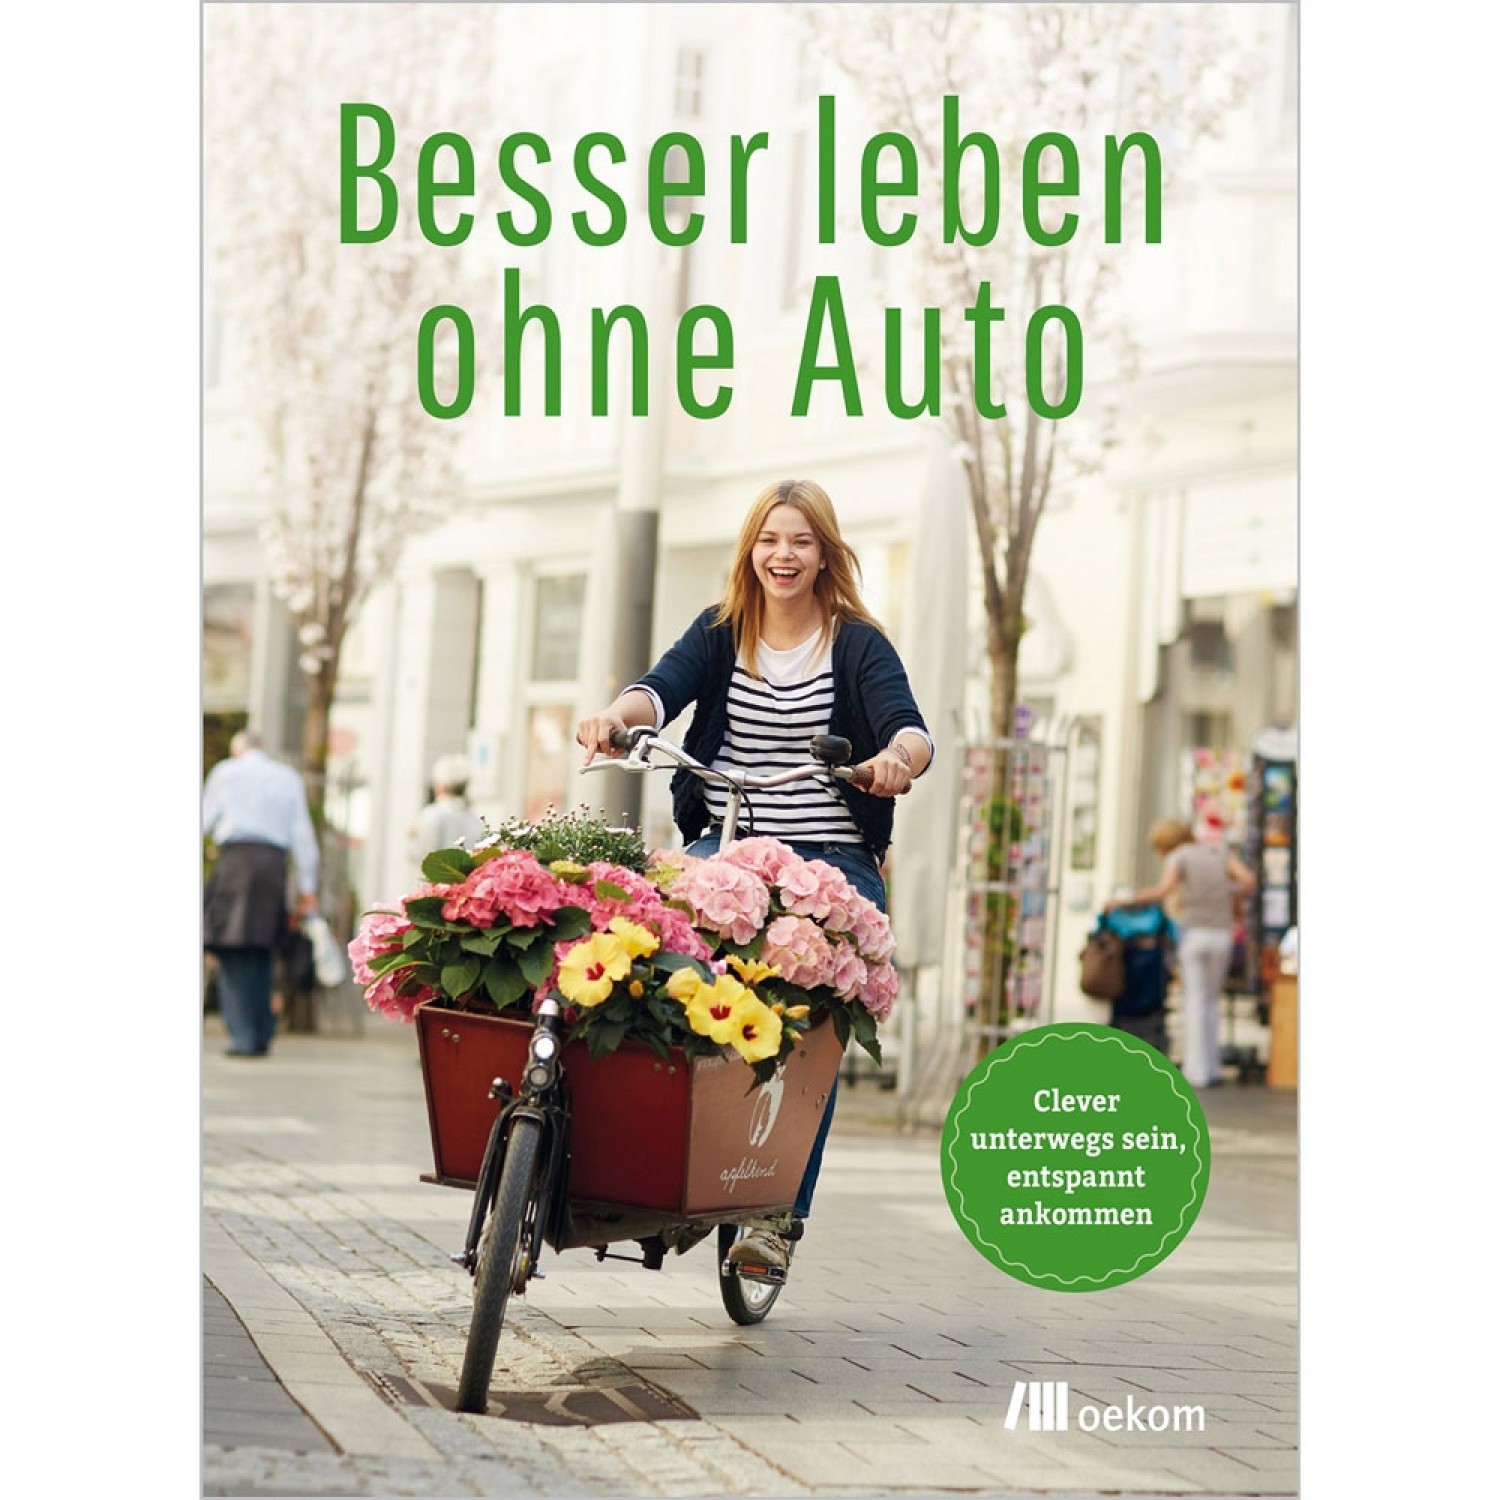 Besser leben ohne Auto - car-free life | oekom publisher